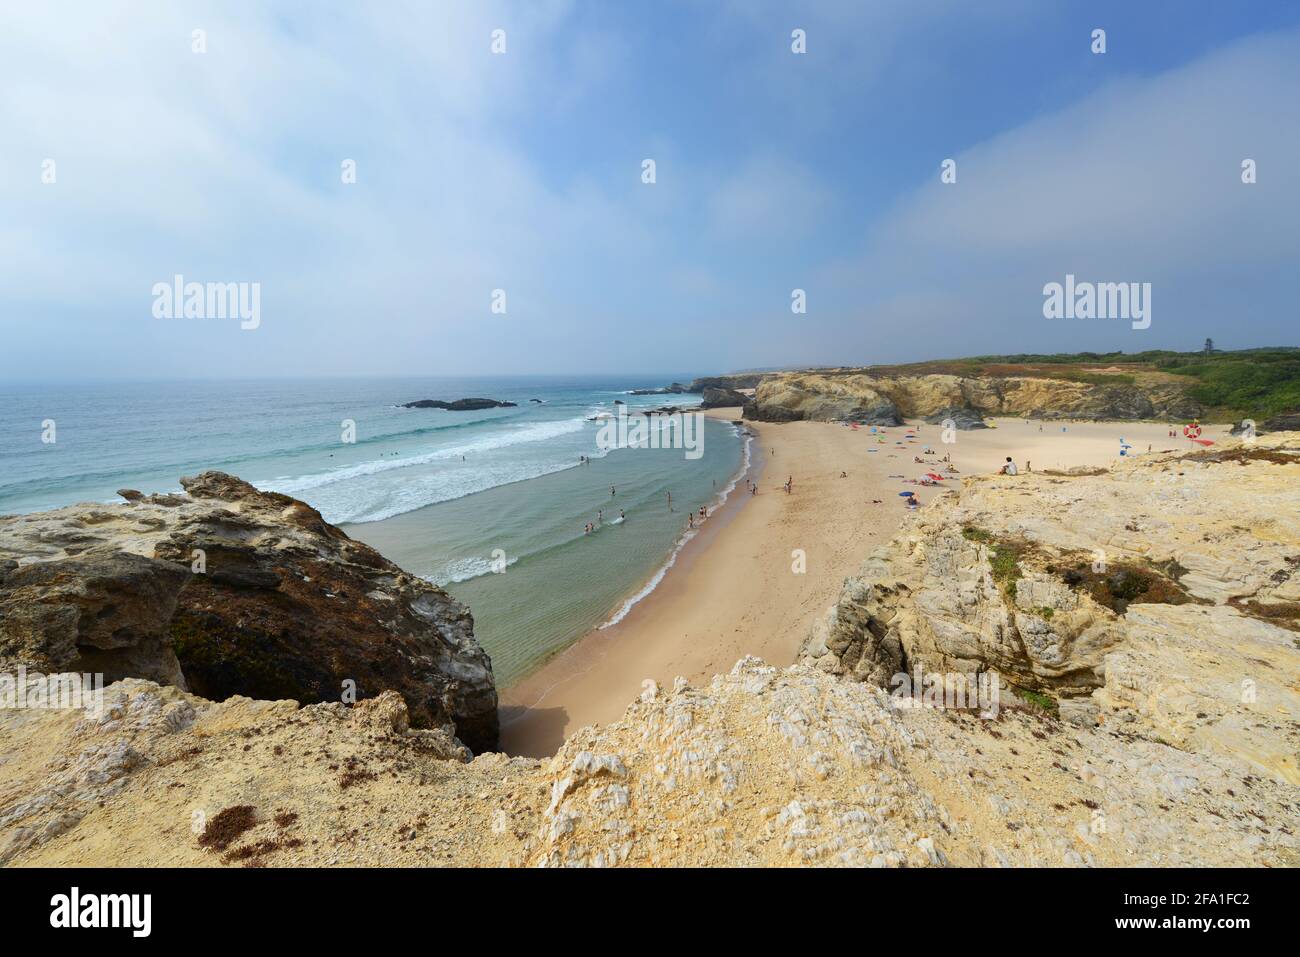 Praia Grande de Porto Covo in Portugal. Stock Photo